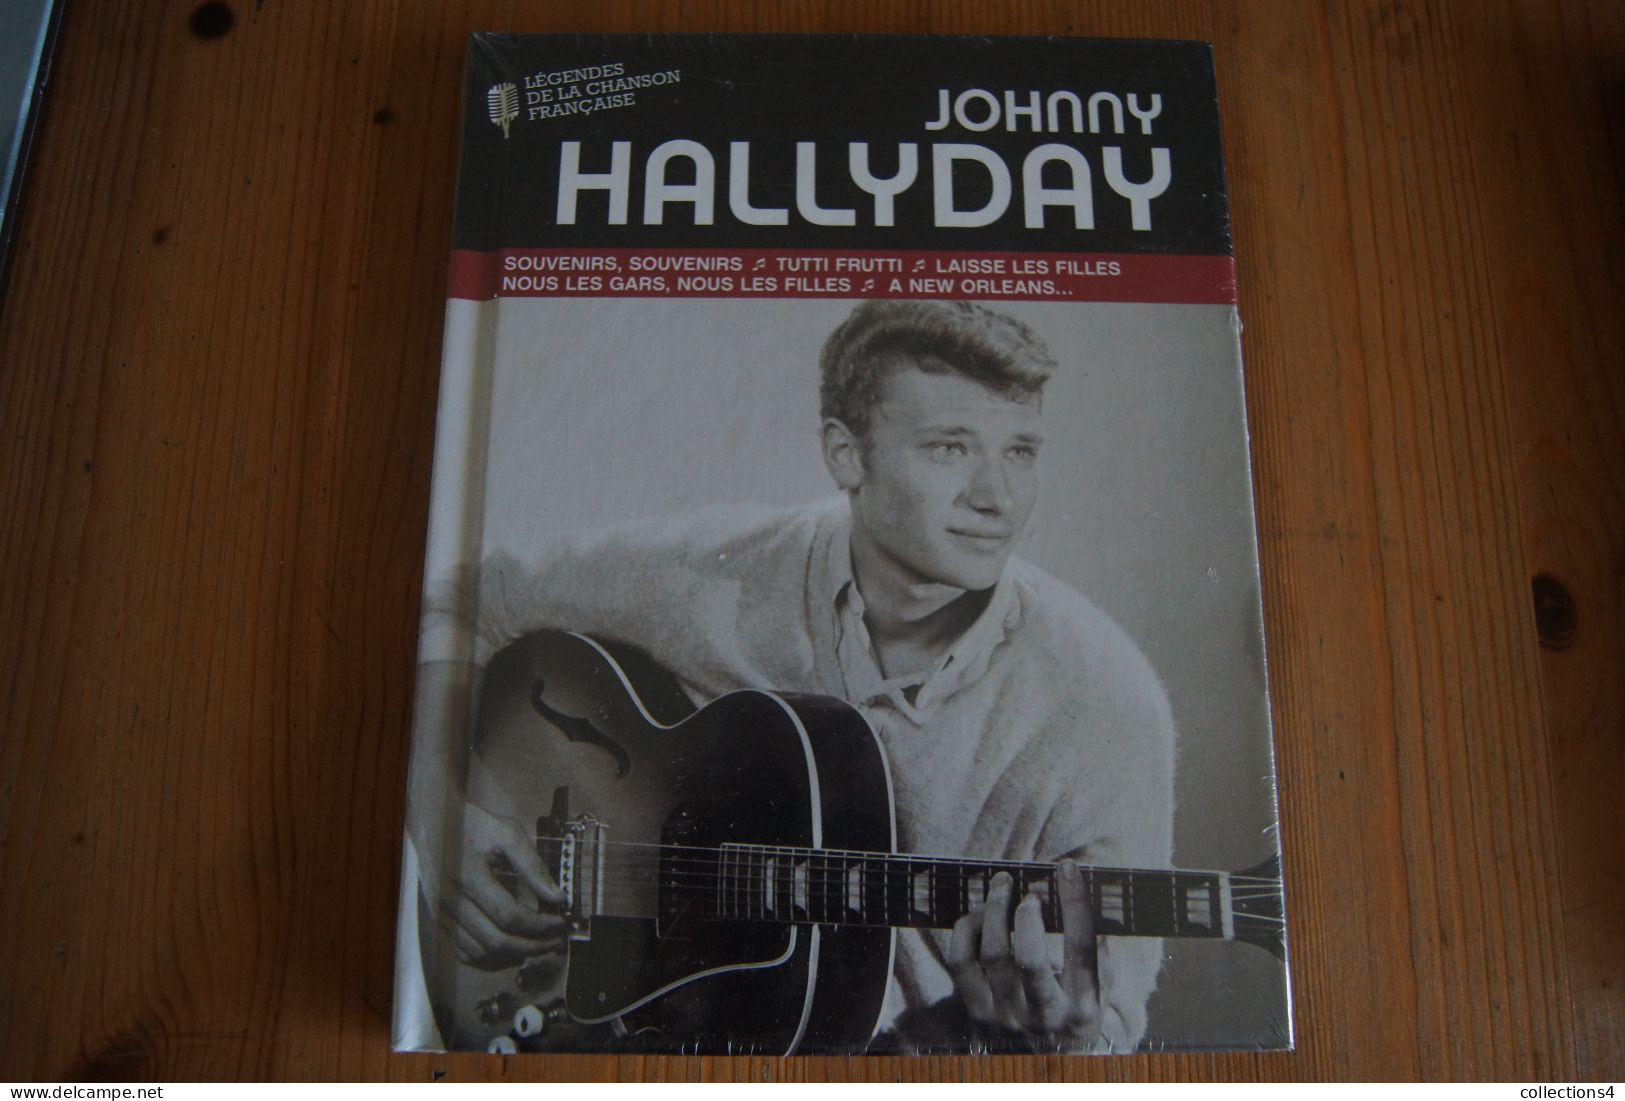 JOHNNY HALLYDAY LEGENDES DE LA CHANSON FRANCAISE LIVRE CD NEUF SCELLE  2008 VALEUR+ PERIODE VOGUE - Rock